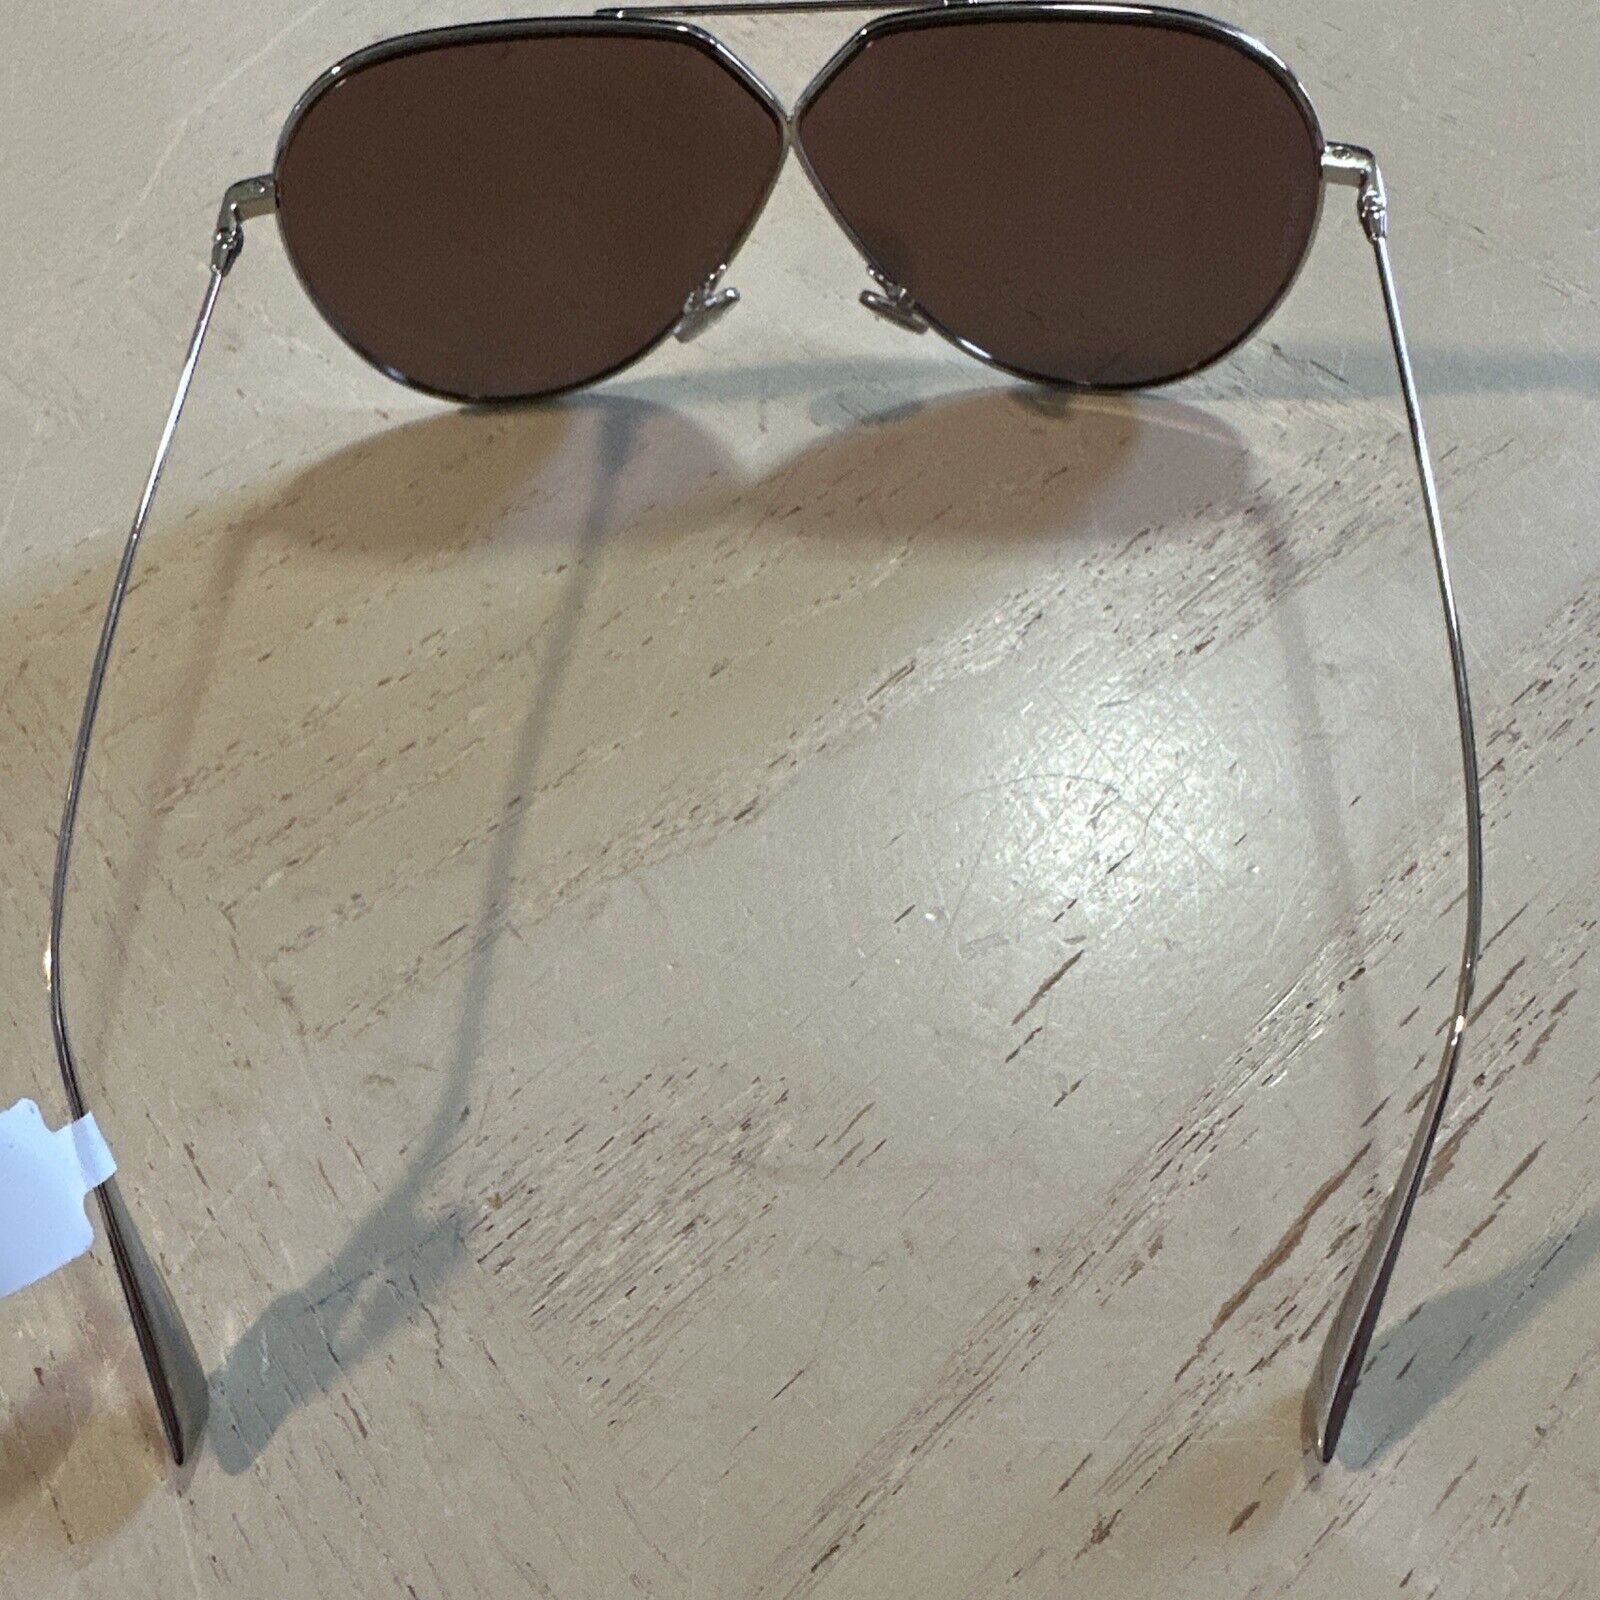 New $420 Dior 55Mm Aviator Sunglasses Polarized Color CHAMPAGNE O10SQ